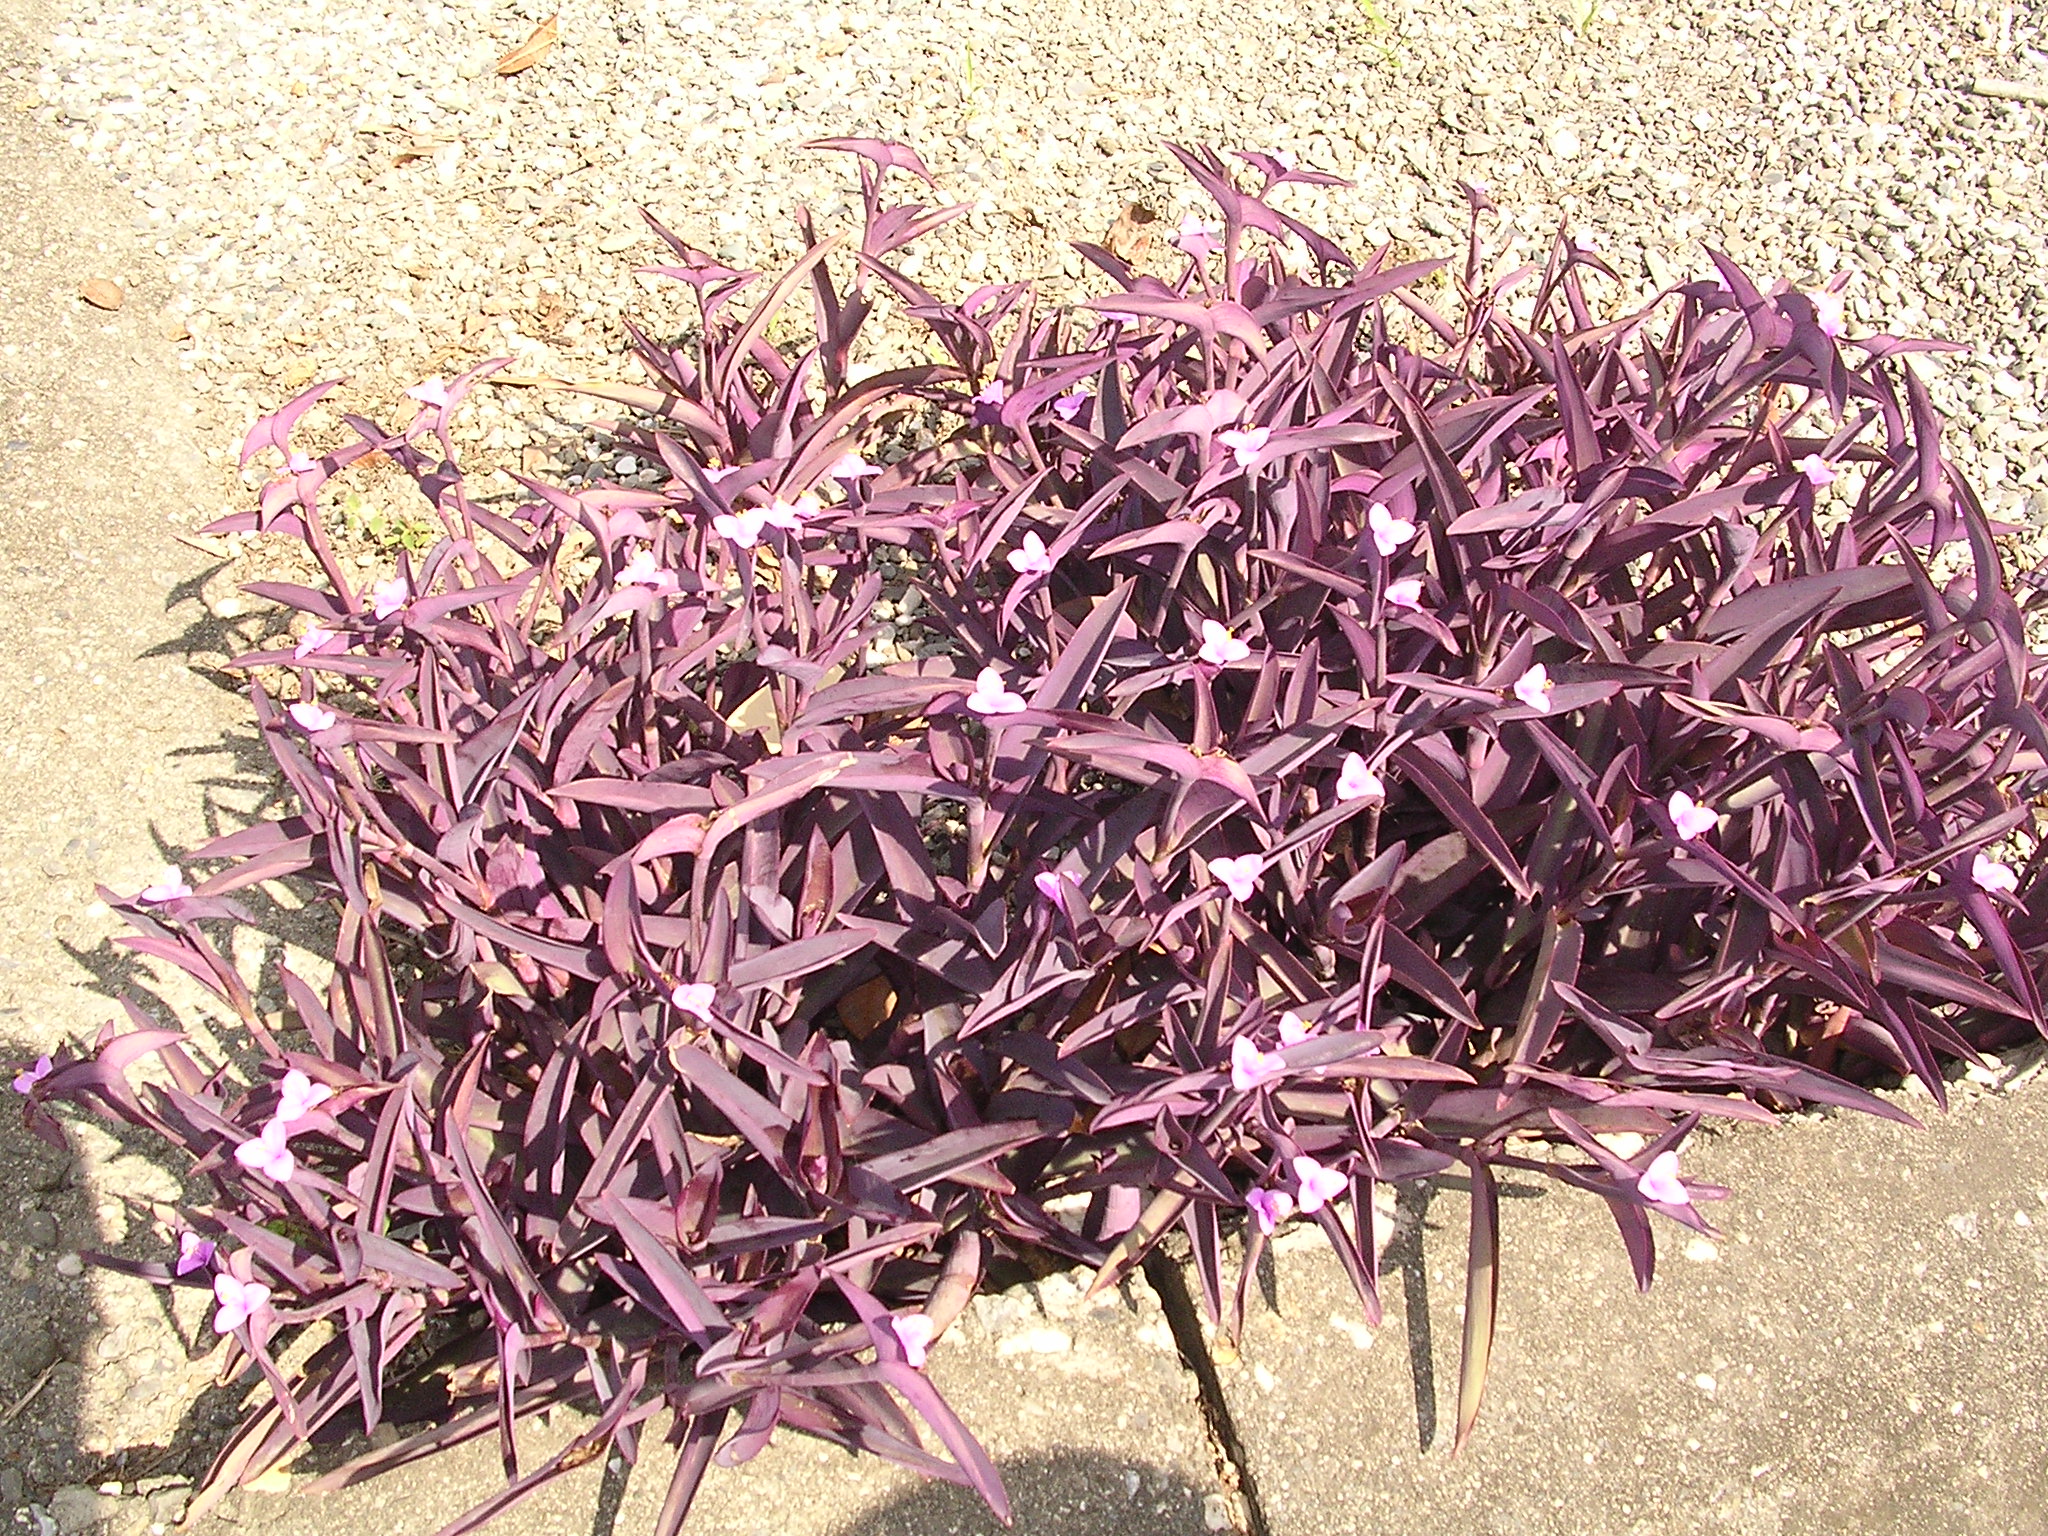 Taiwanese purple grass